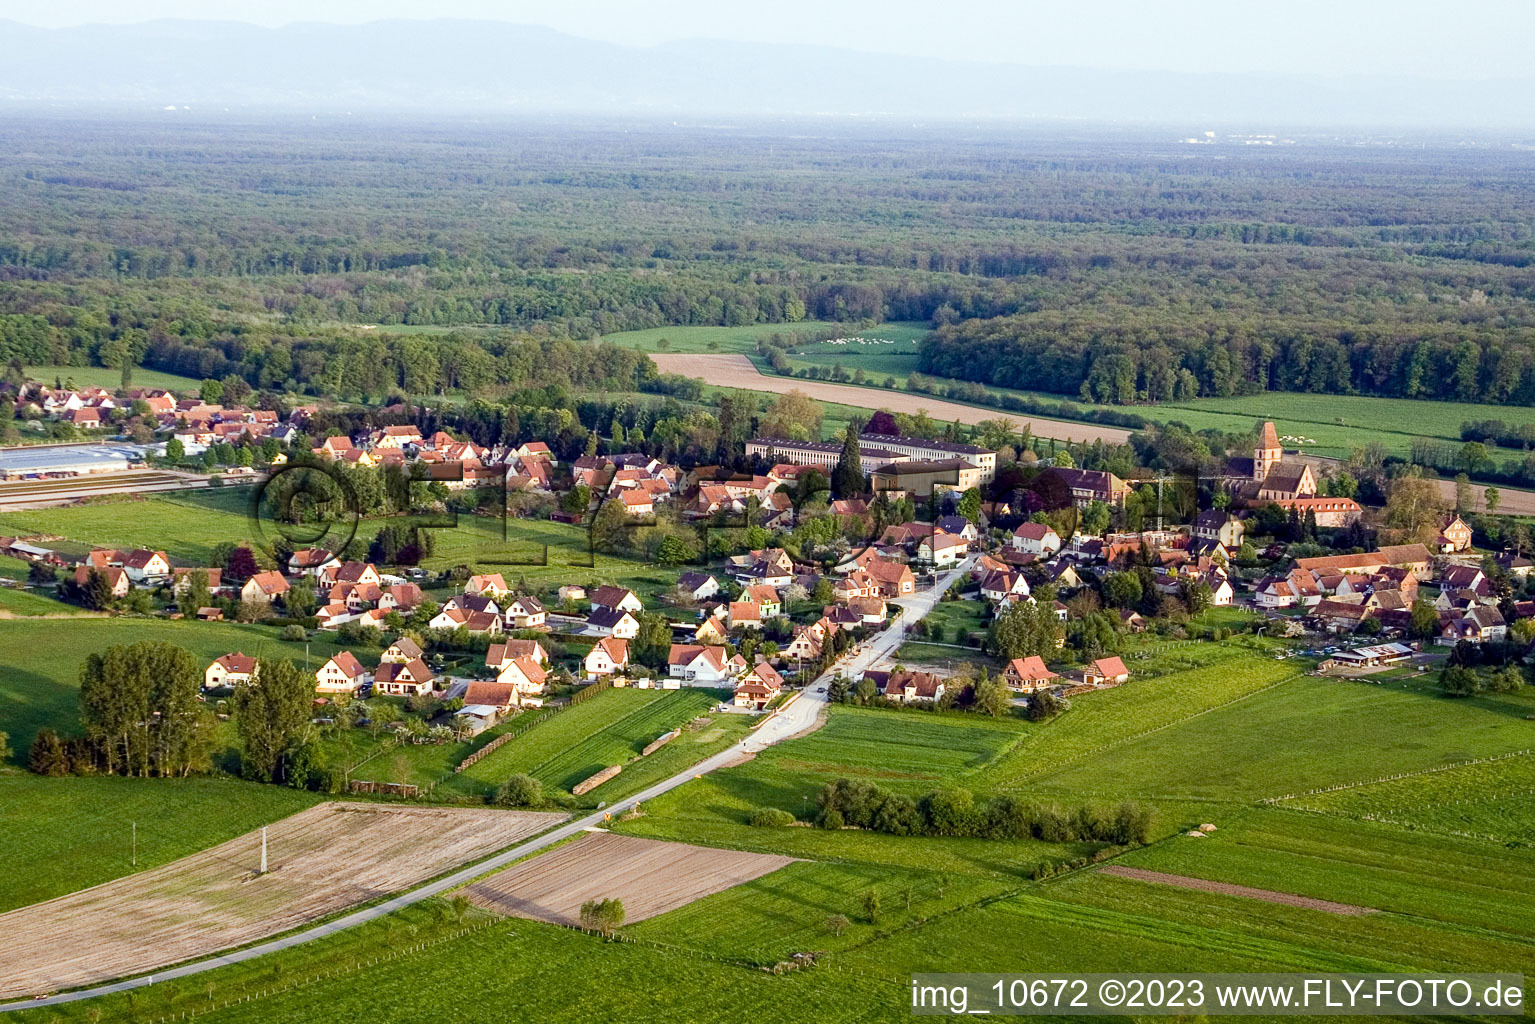 Vue aérienne de Durrenbach dans le département Bas Rhin, France